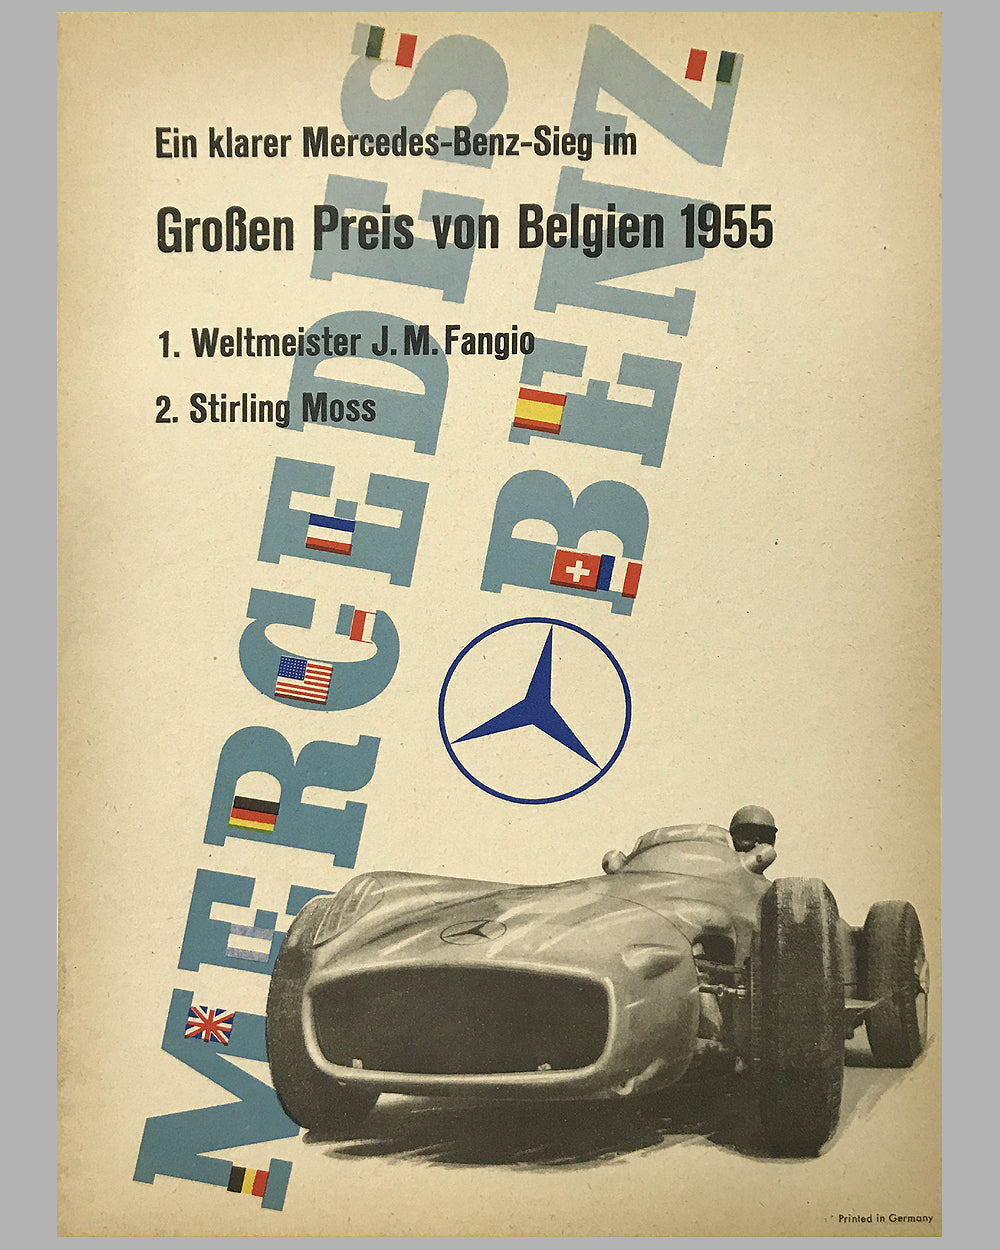 1955 Grand Prix of Belgium Mercedes-Benz original victory poster